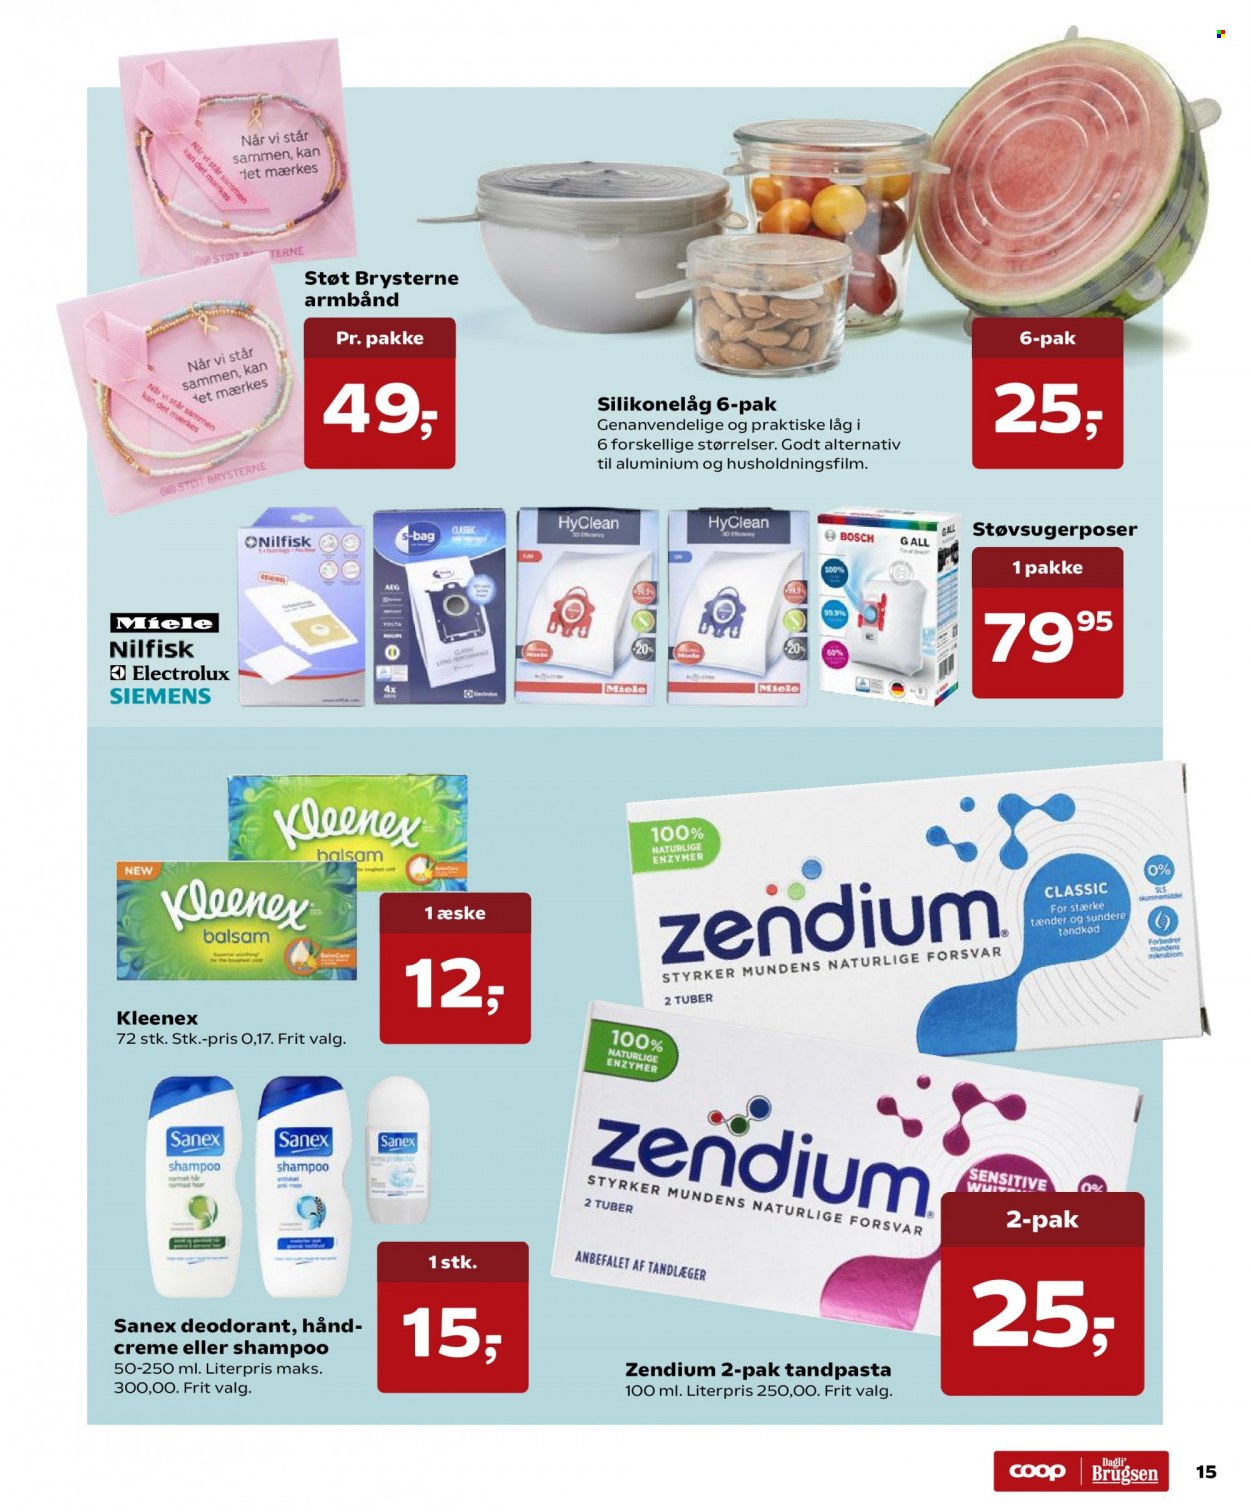 thumbnail - Dagli'Brugsen tilbud  - 10.9.2021 - 23.9.2021 - tilbudsprodukter - kleenex, shampoo, Zendium. Side 15.